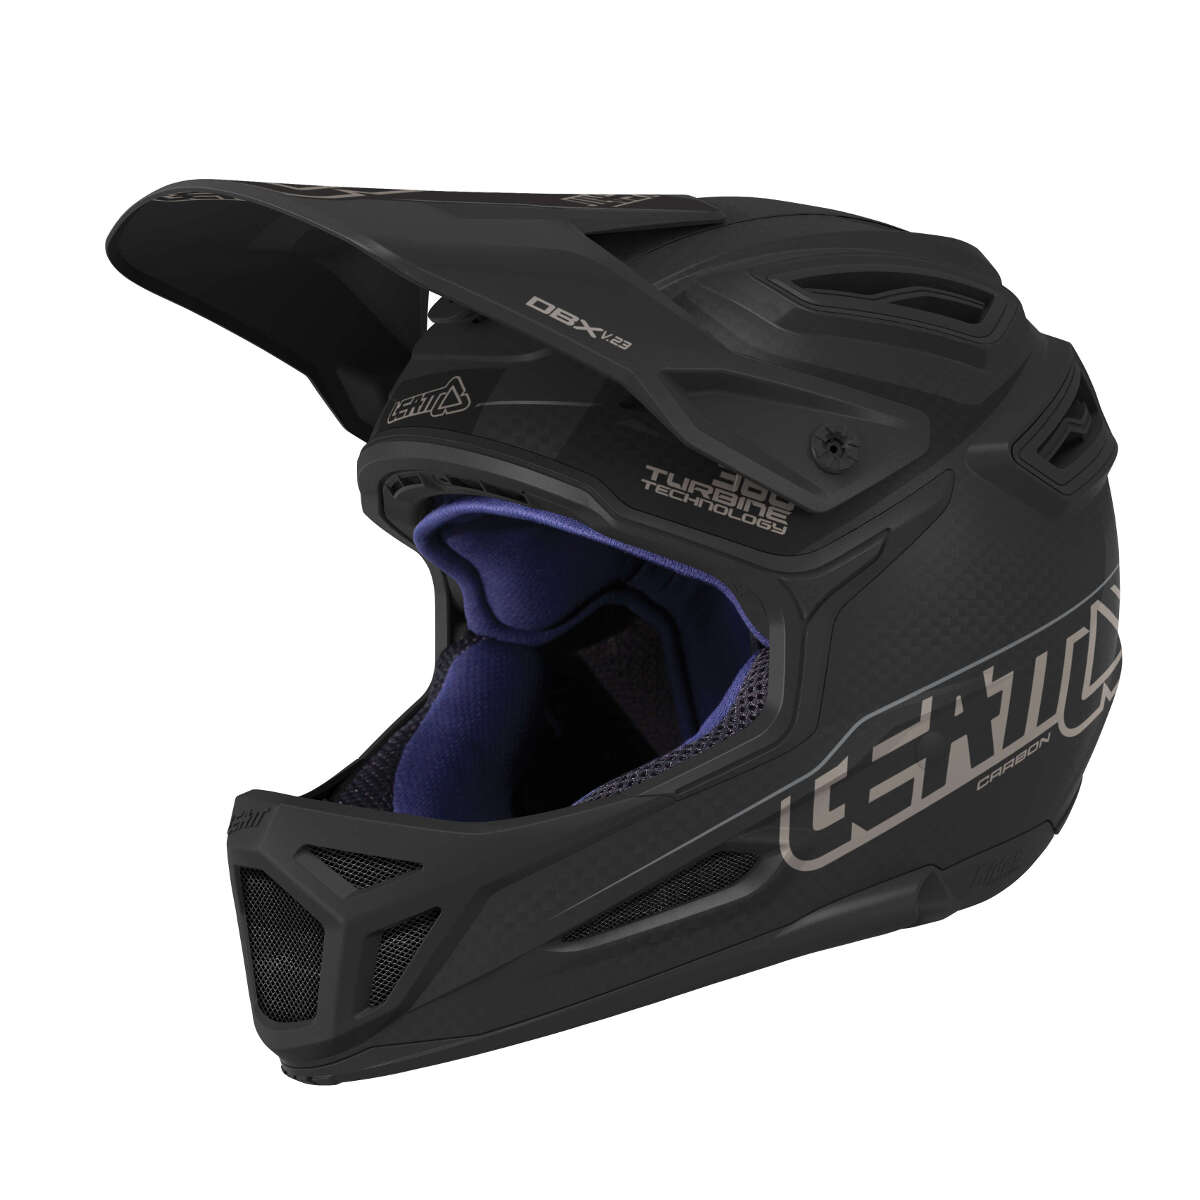 Leatt Downhill MTB Helmet DBX 6.0 Carbon Black